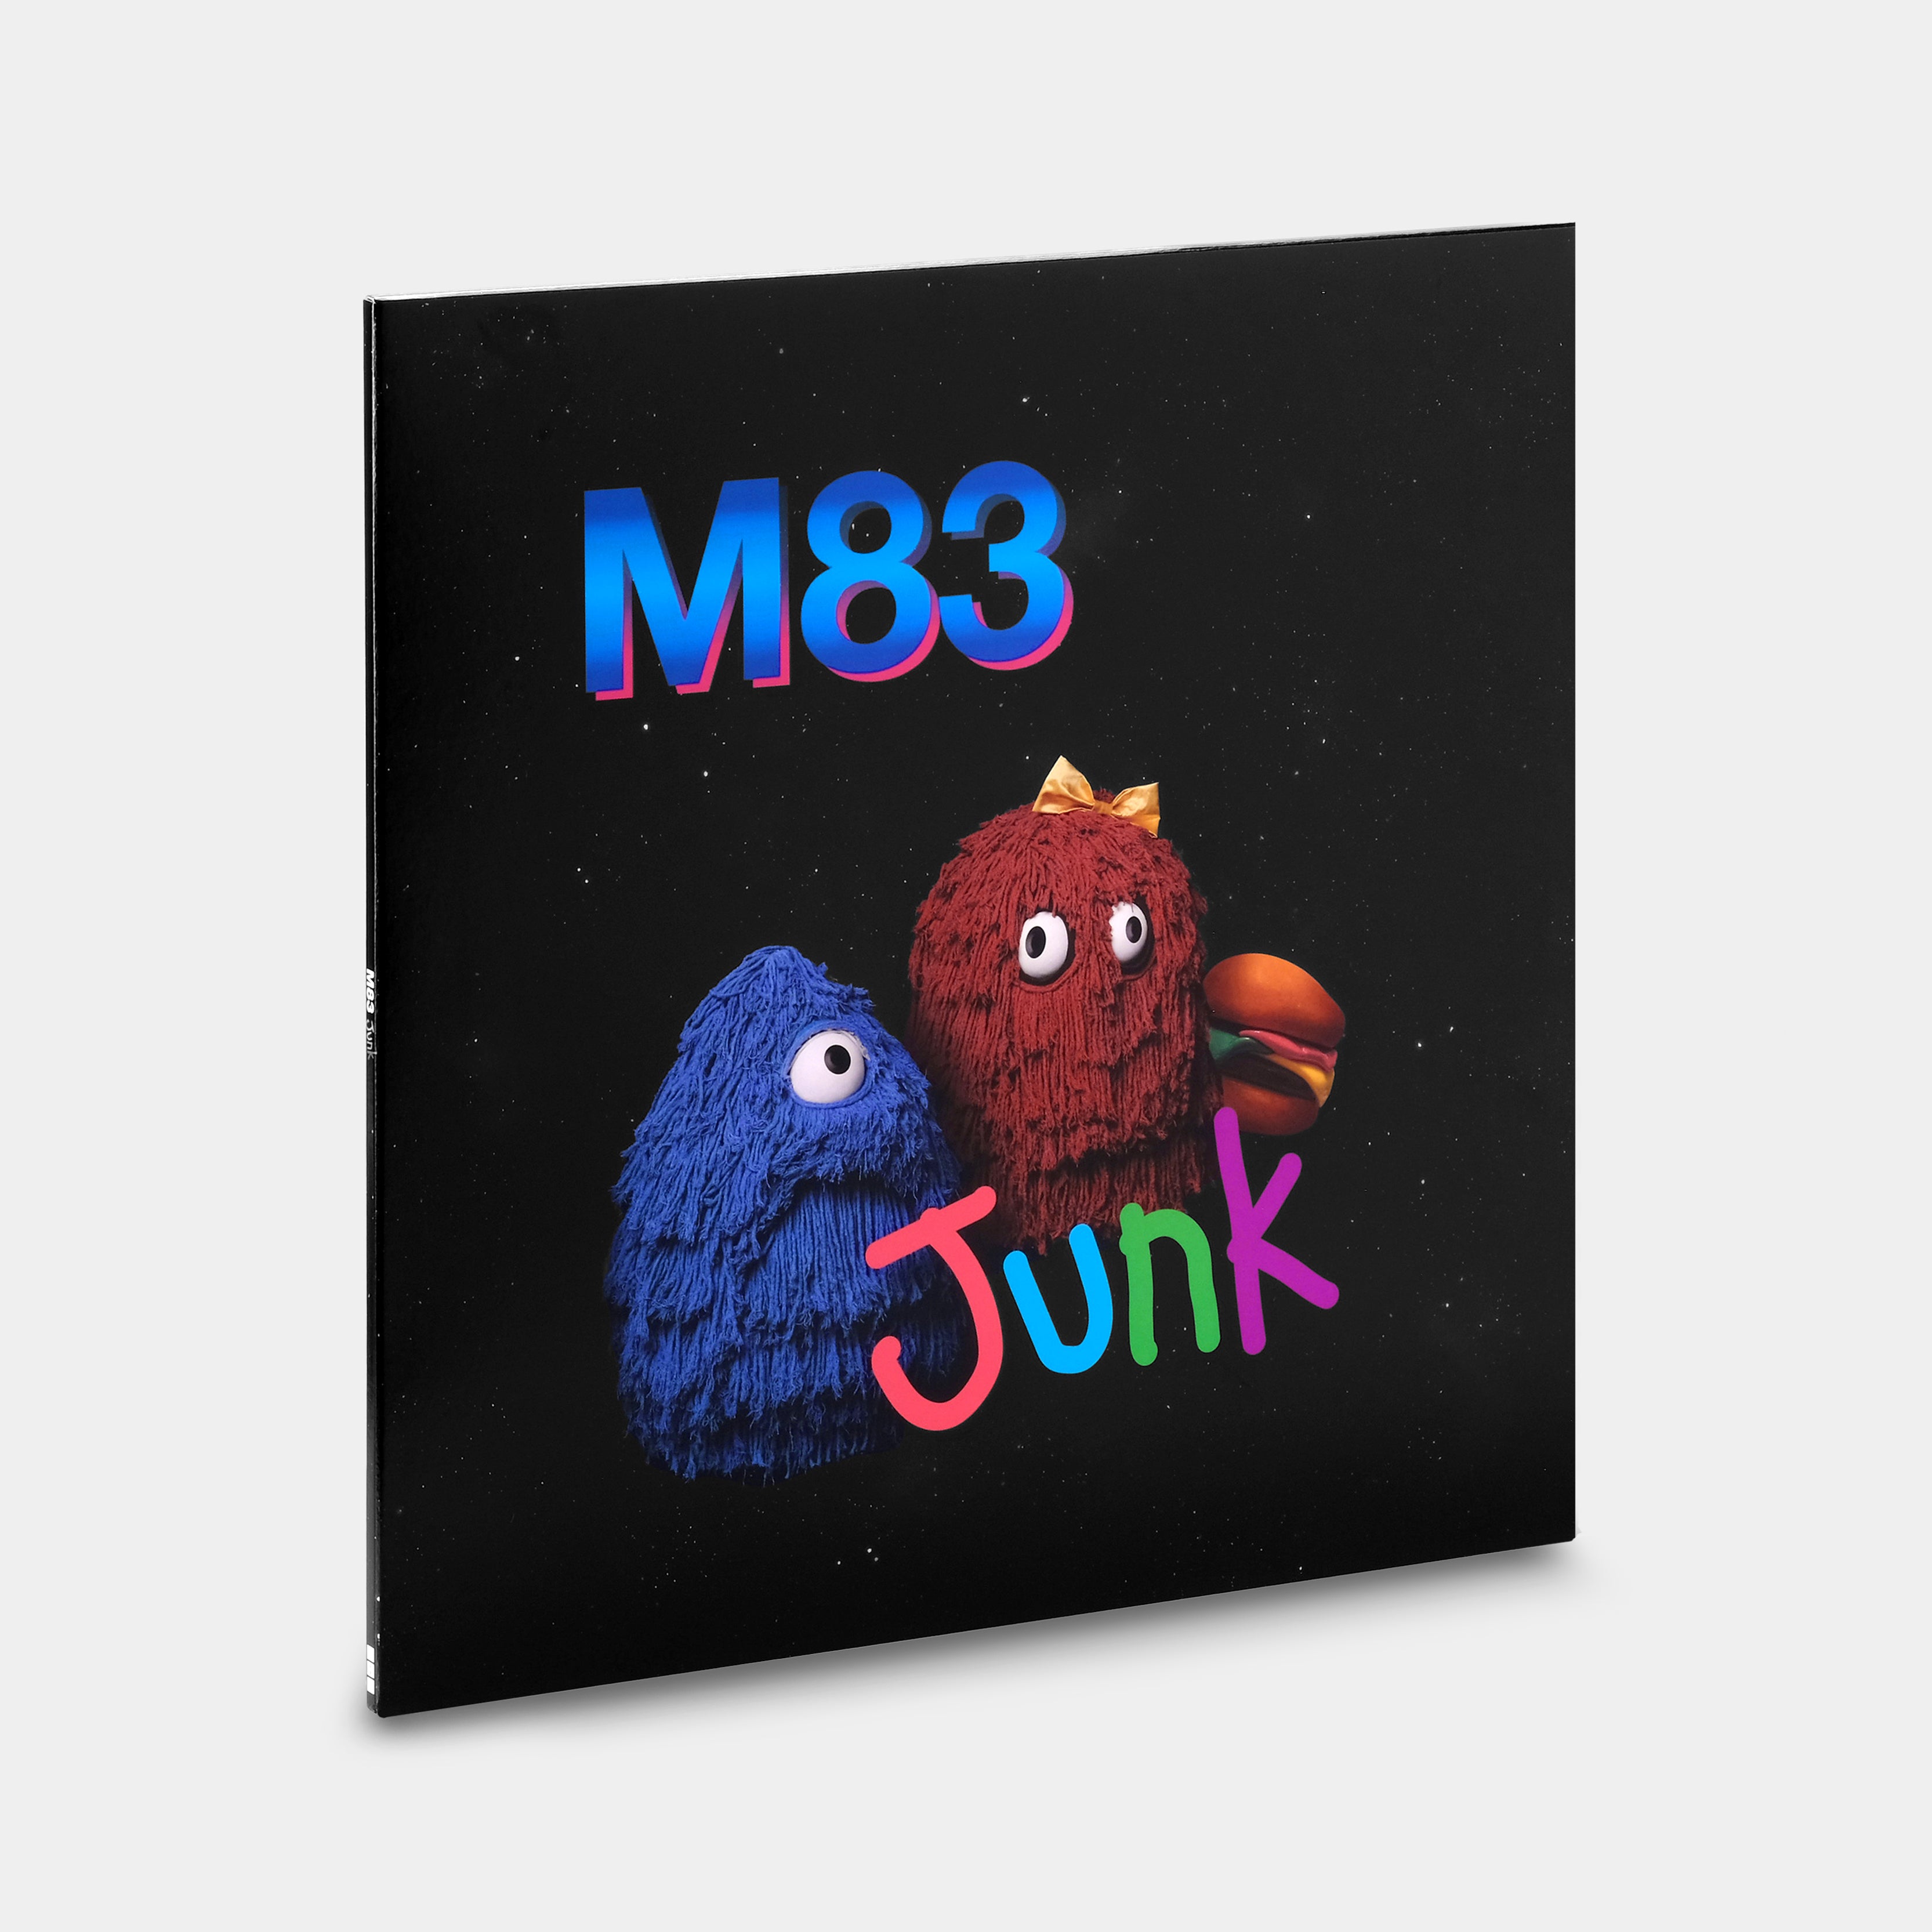 M83 - Junk 2xLP Vinyl Record